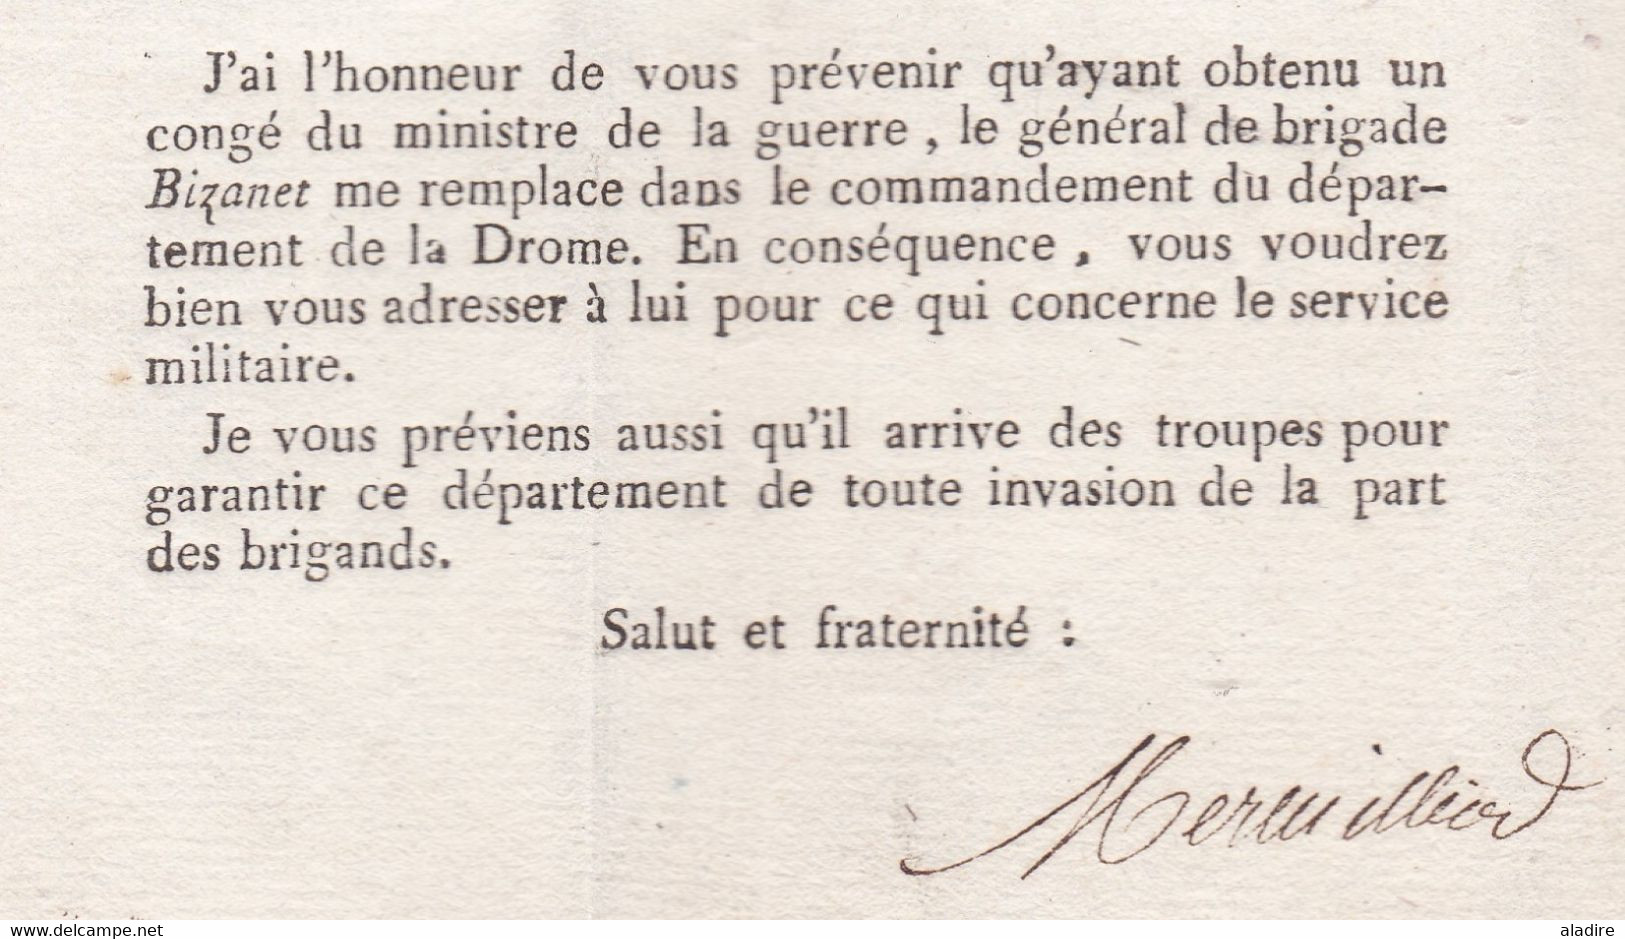 1800 - An 8 - Service Militaire - Marque Postale 25 VALENCE sur lettre imprimée pliée vers Saint Vallier, Drôme